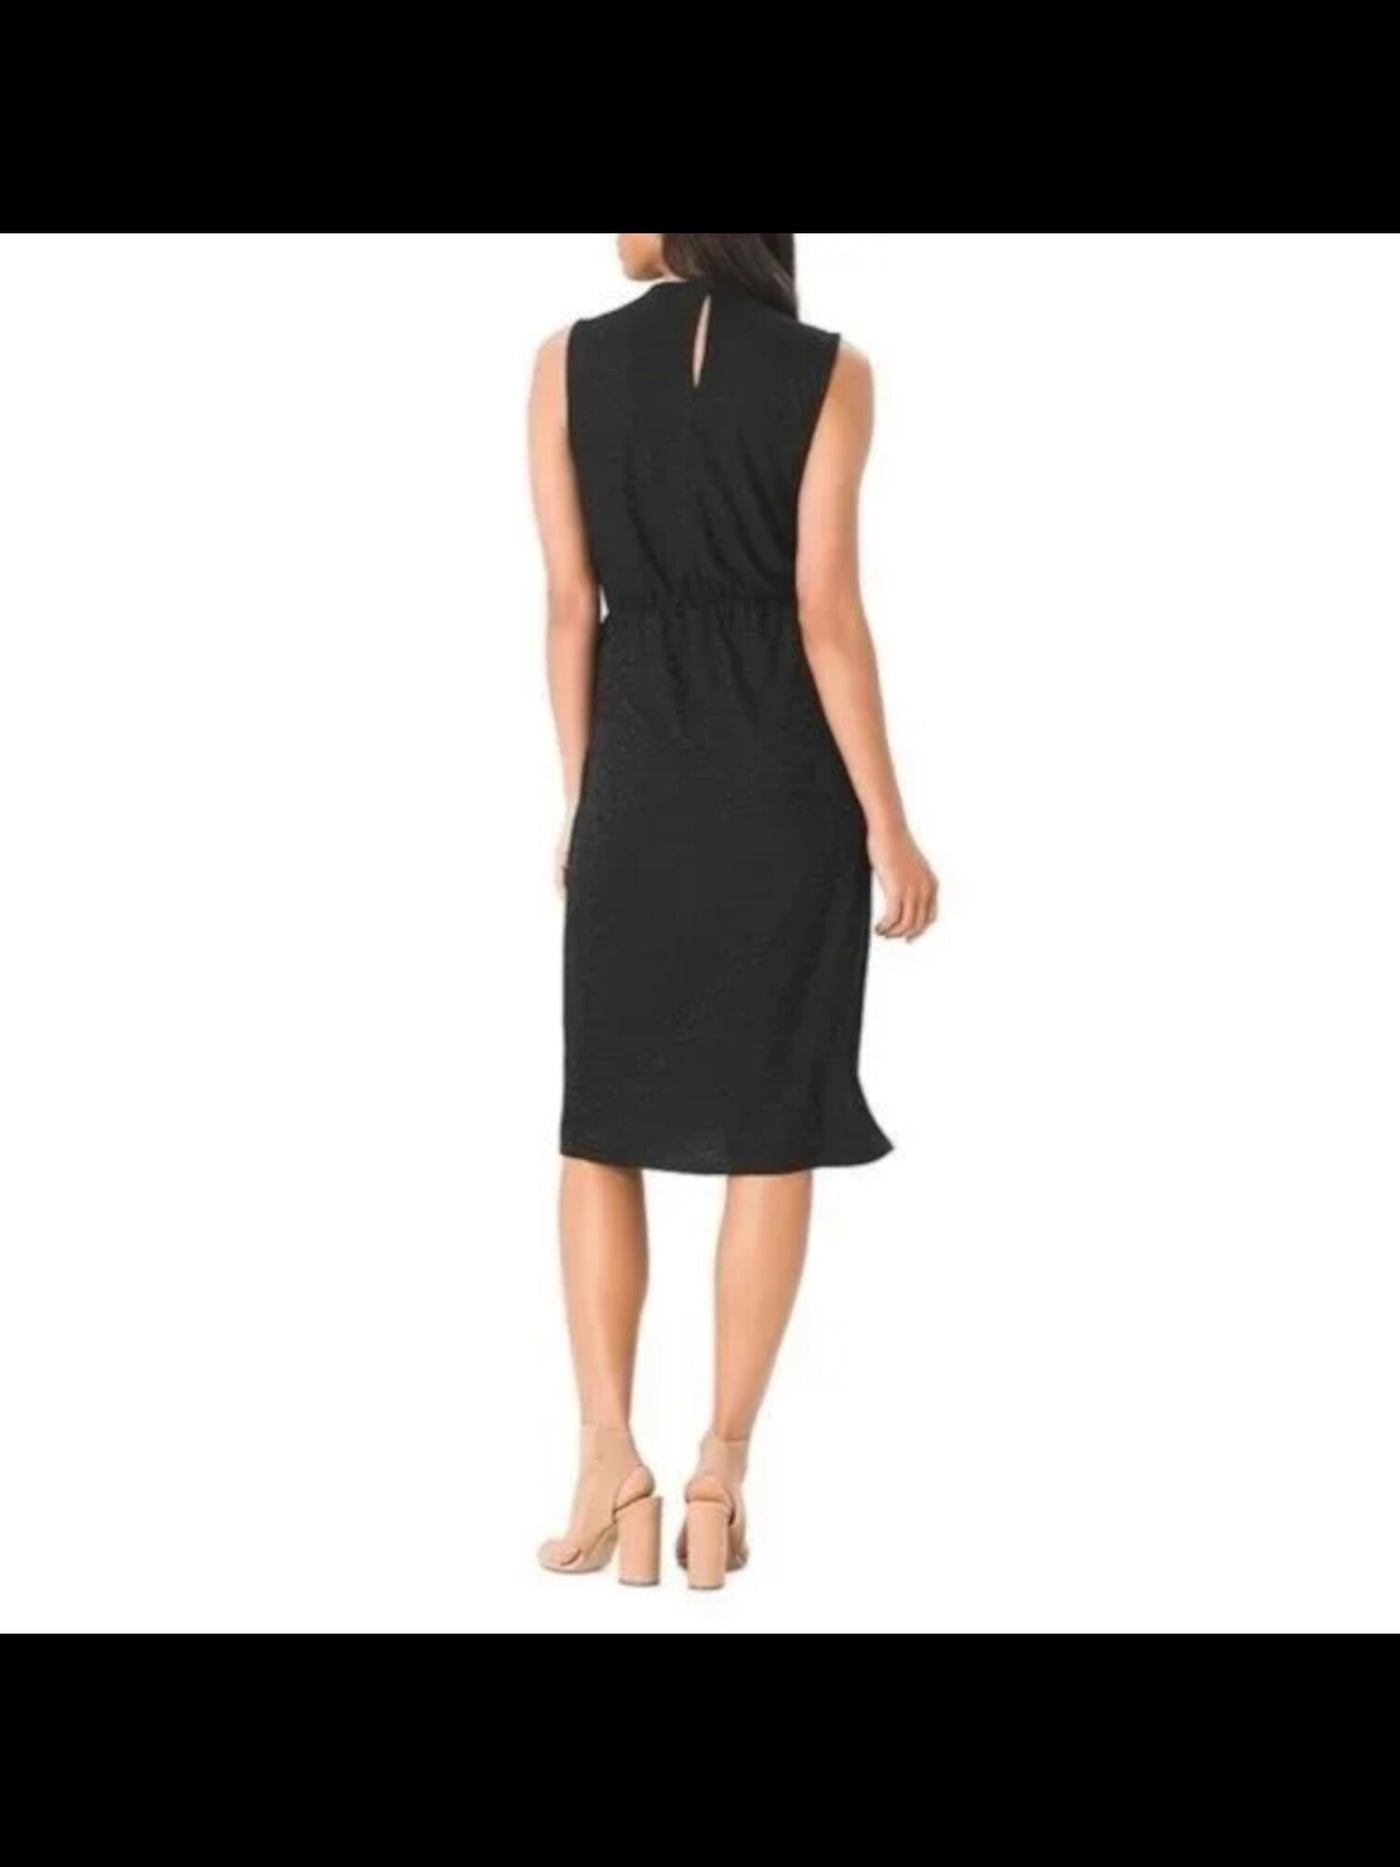 LEOTA Womens Black Stretch Textured Tie Faux Wrap Skirt Sleeveless Jewel Neck Below The Knee Sheath Dress XXL